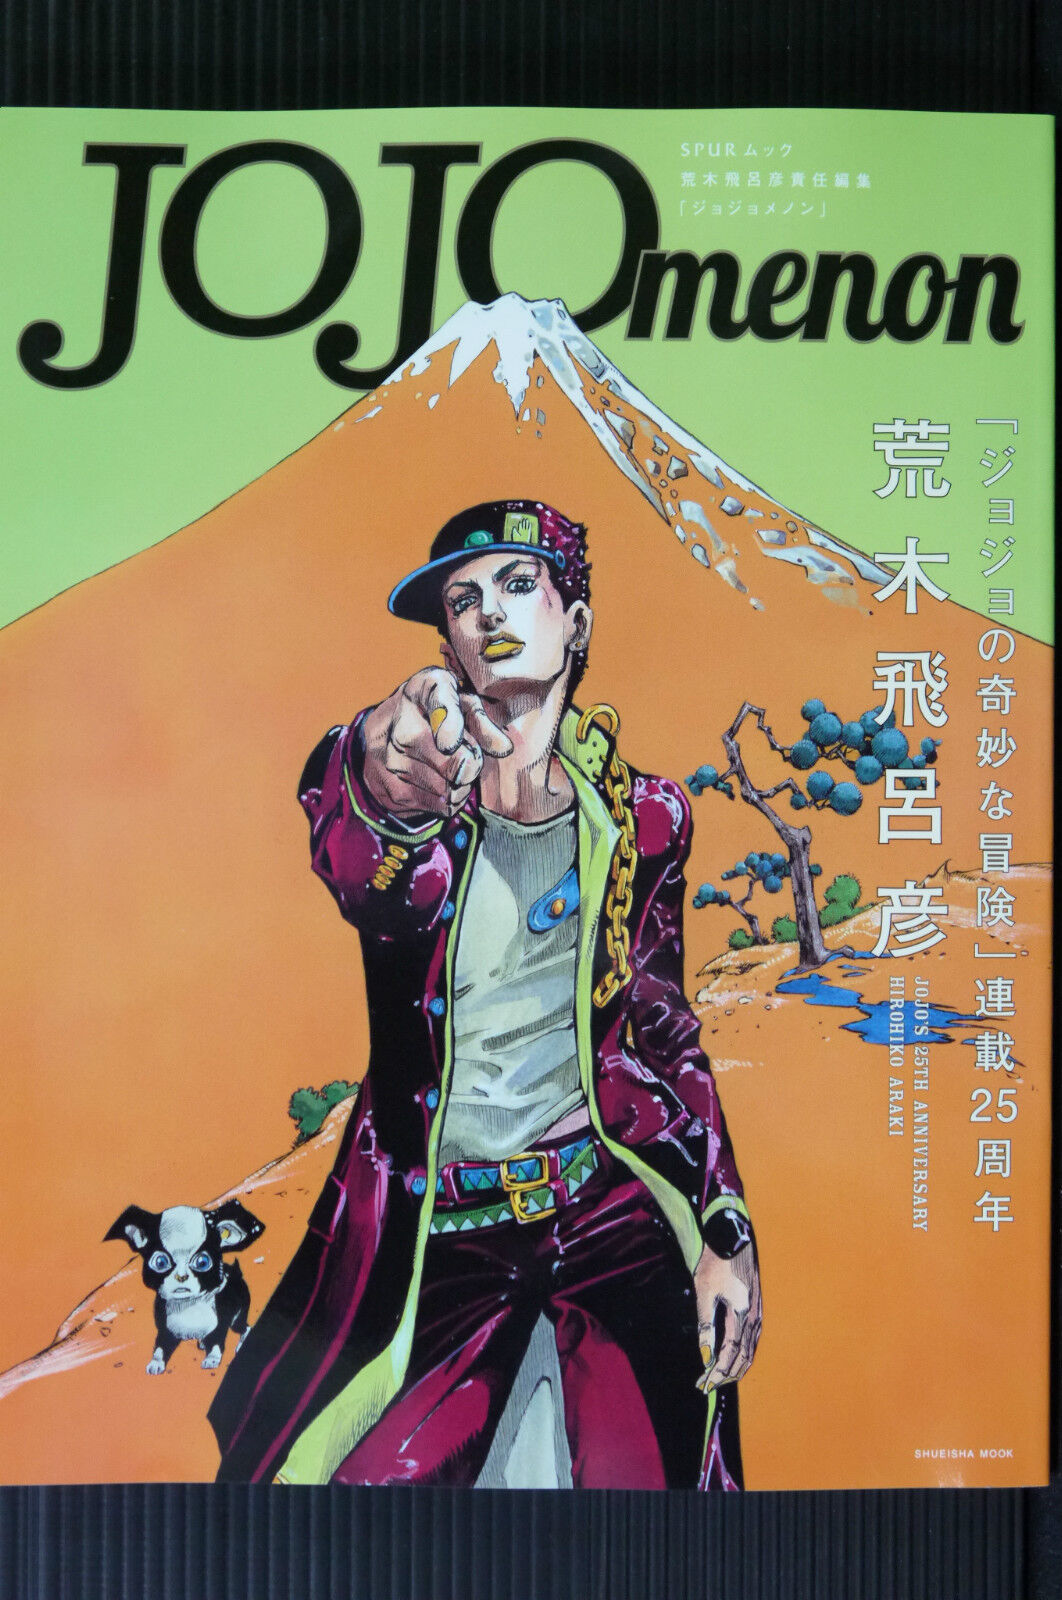 JAPAN JoJo's Bizarre Adventure Book: JOJOmenon